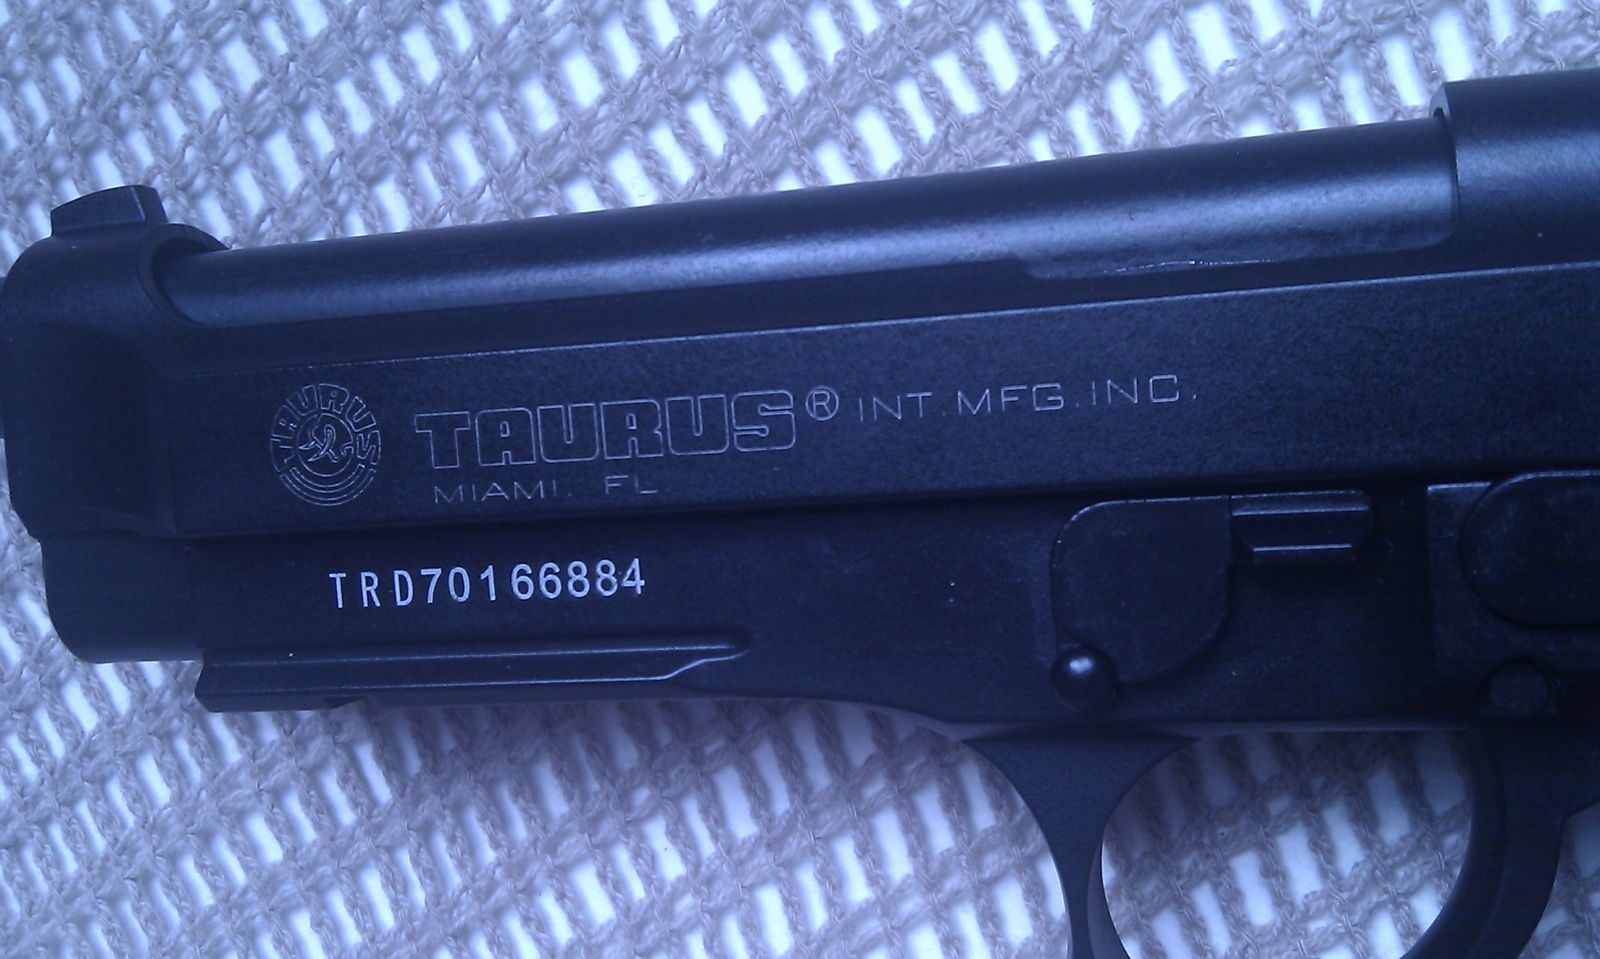 Taurus PT99 closeup